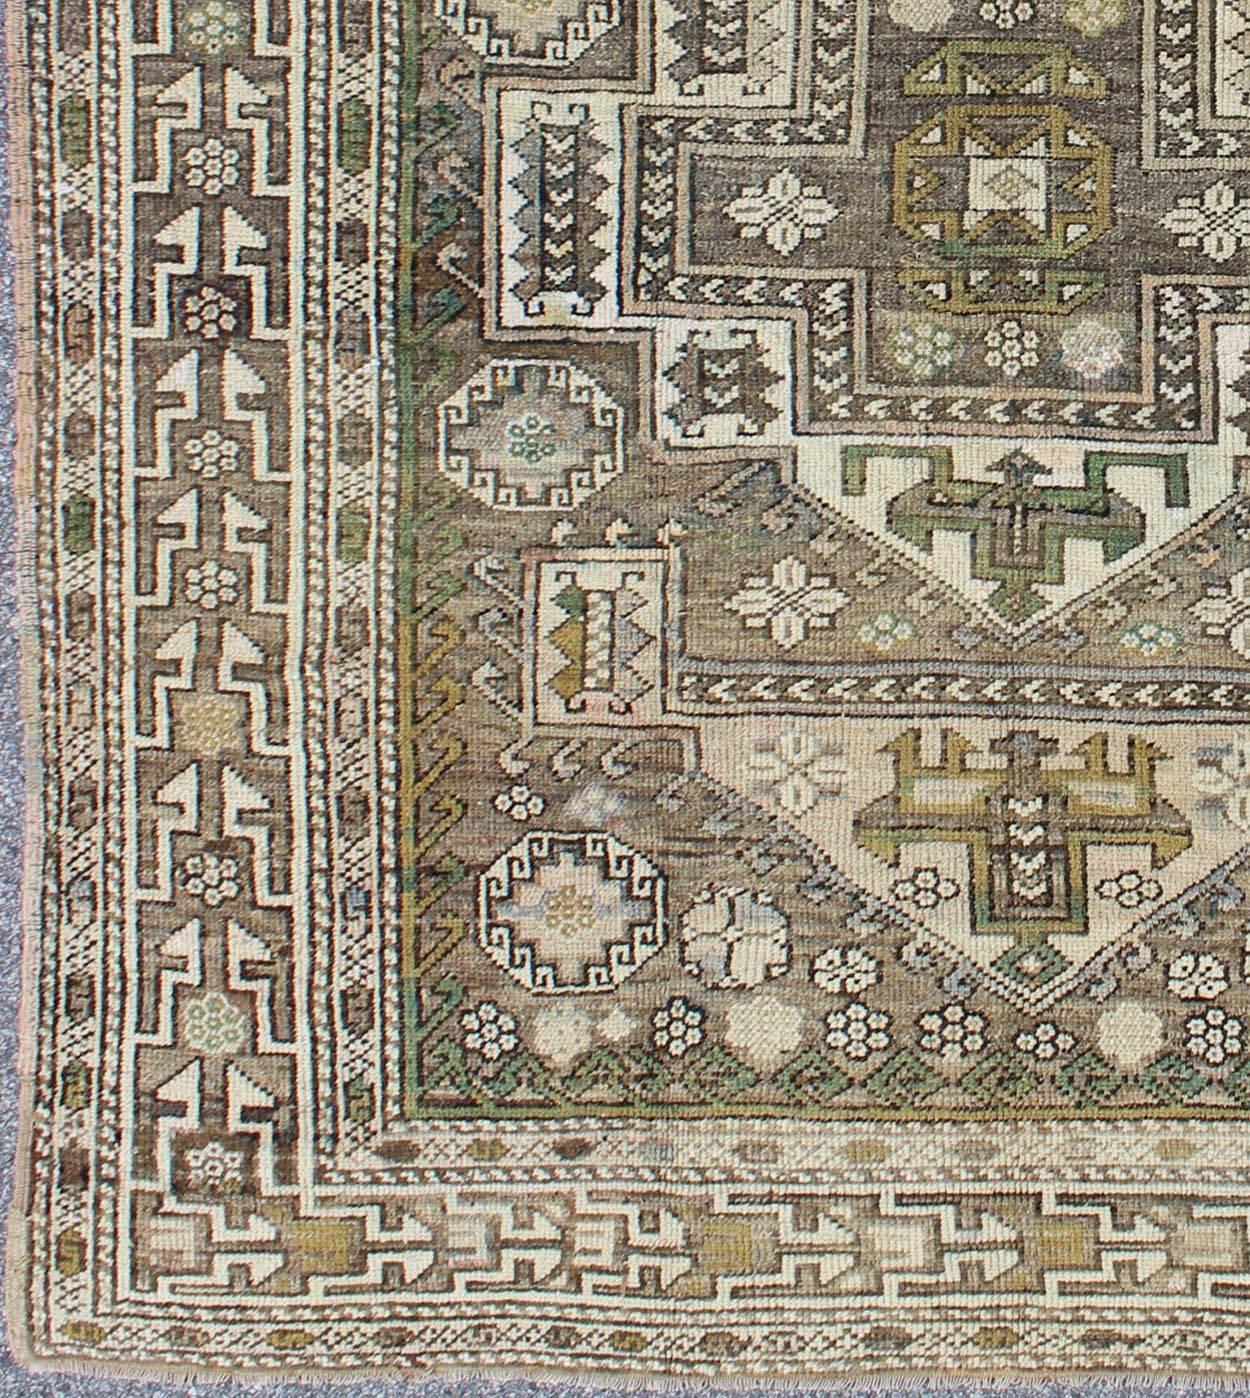 Ancien tapis turc Oushak avec médaillon sub-géométrique en vert et brun, tapis moz-10, pays d'origine / type : Turquie / Oushak, vers le milieu du 20ème siècle.

Cet ancien tapis turc Oushak présente un médaillon en forme de croix à plusieurs